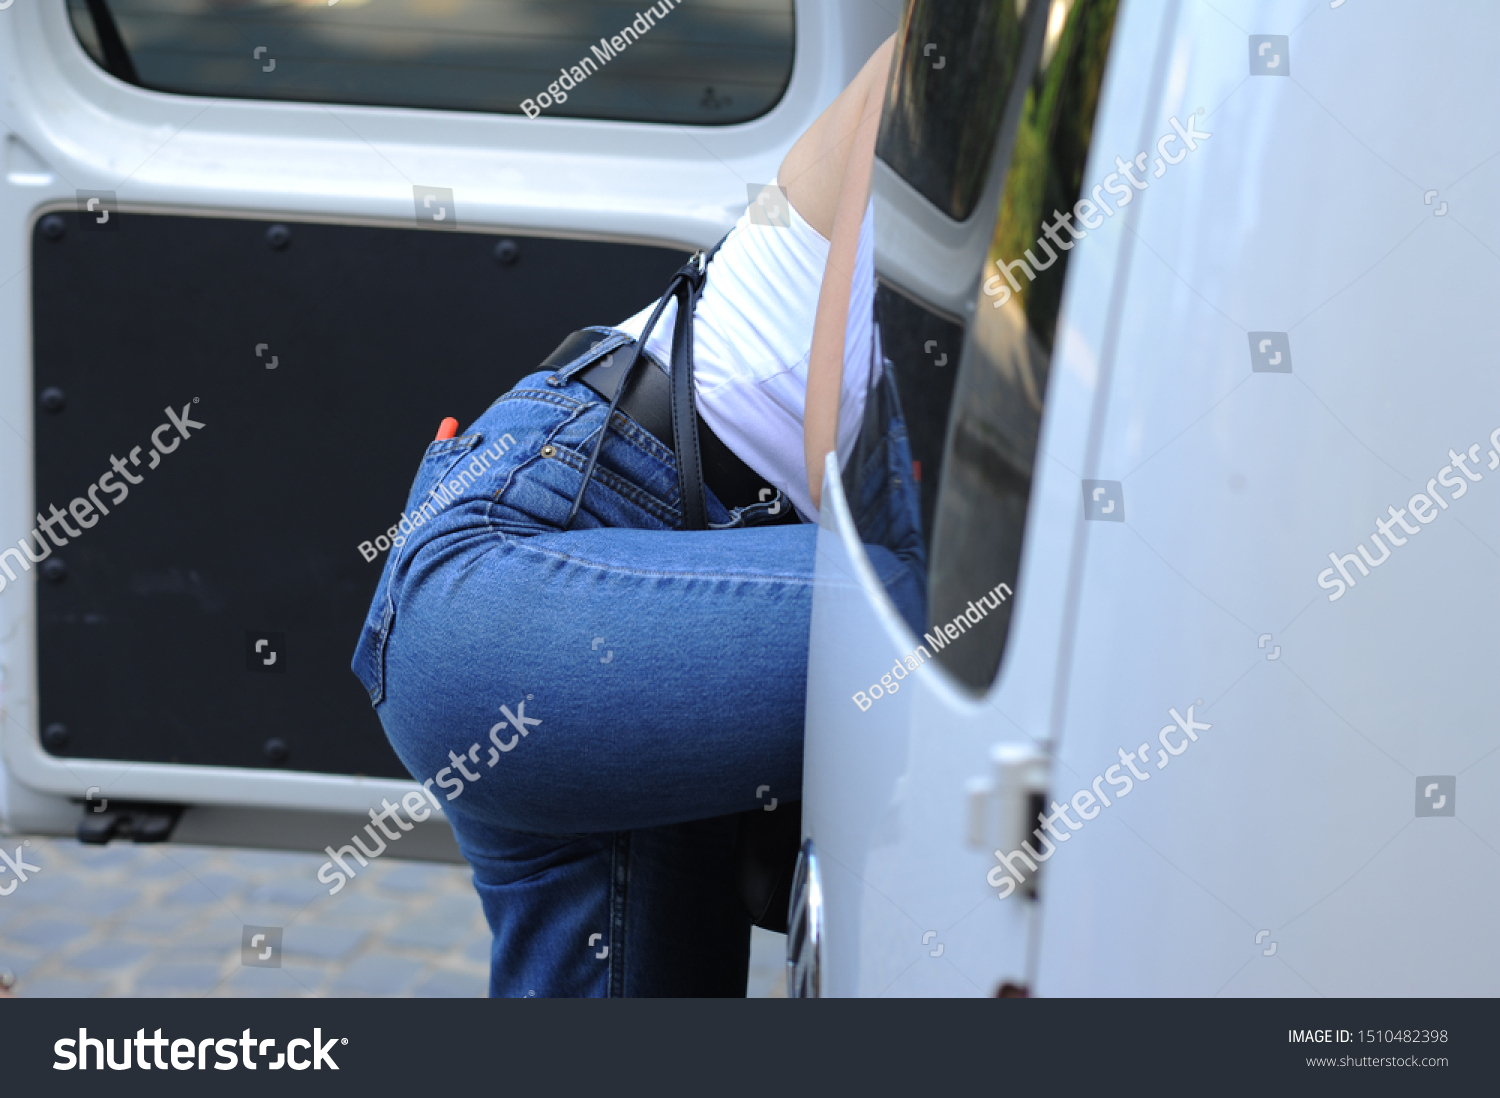 Ass in public